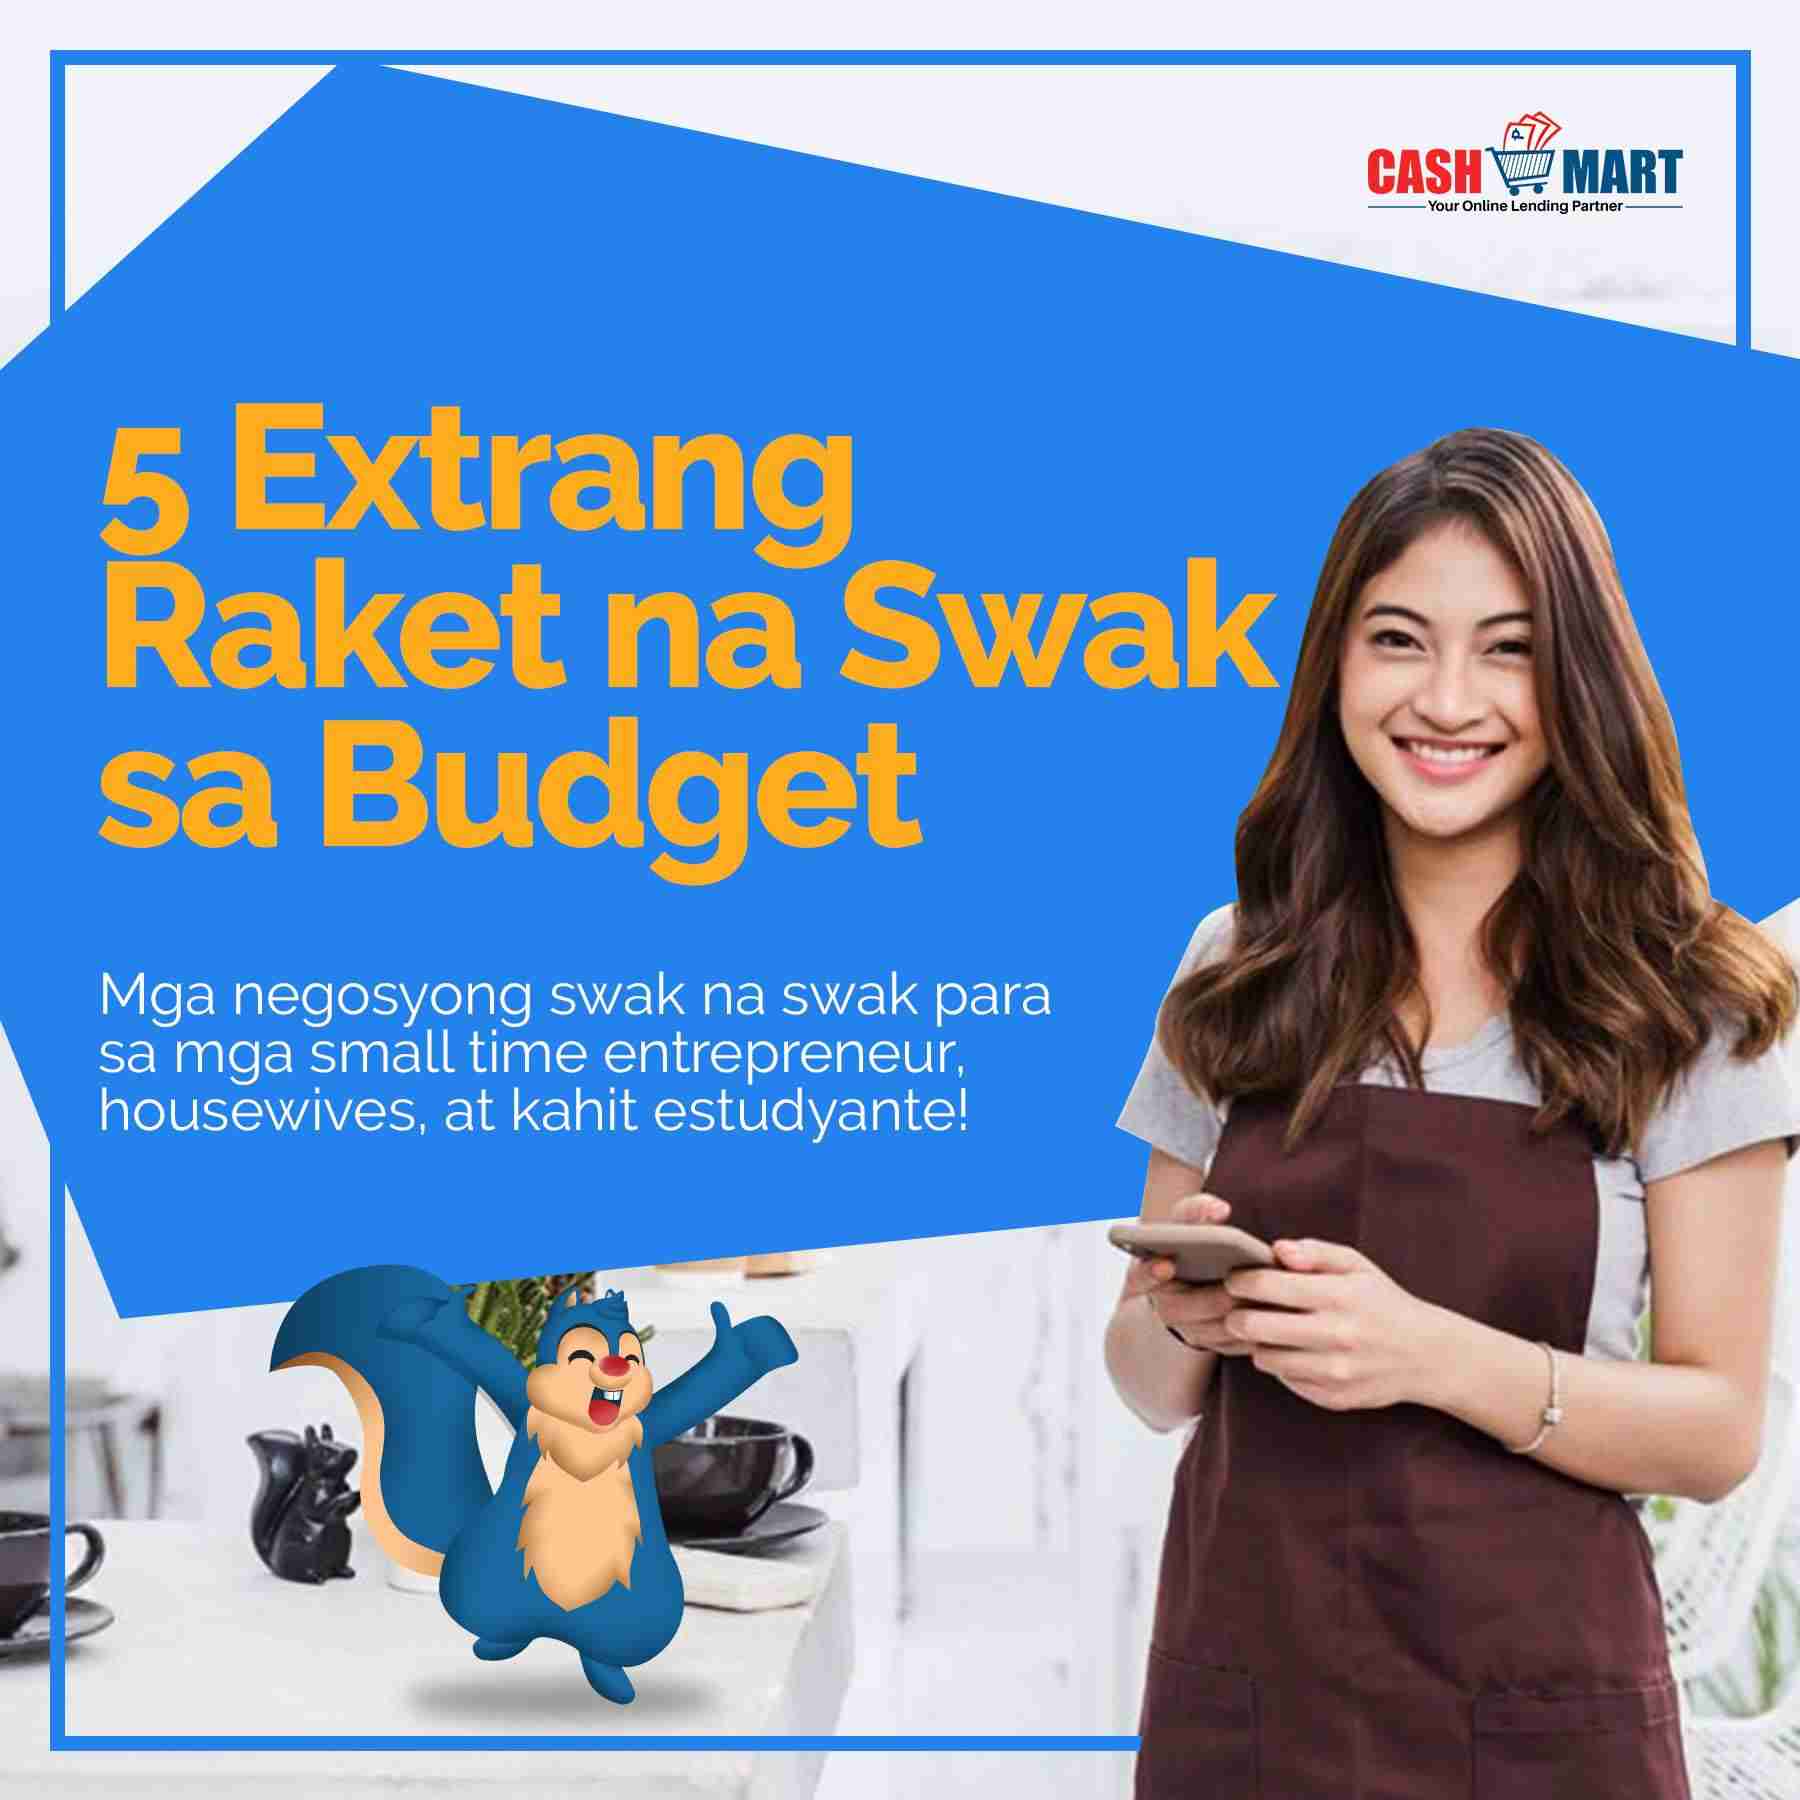 Cash Mart Philippines